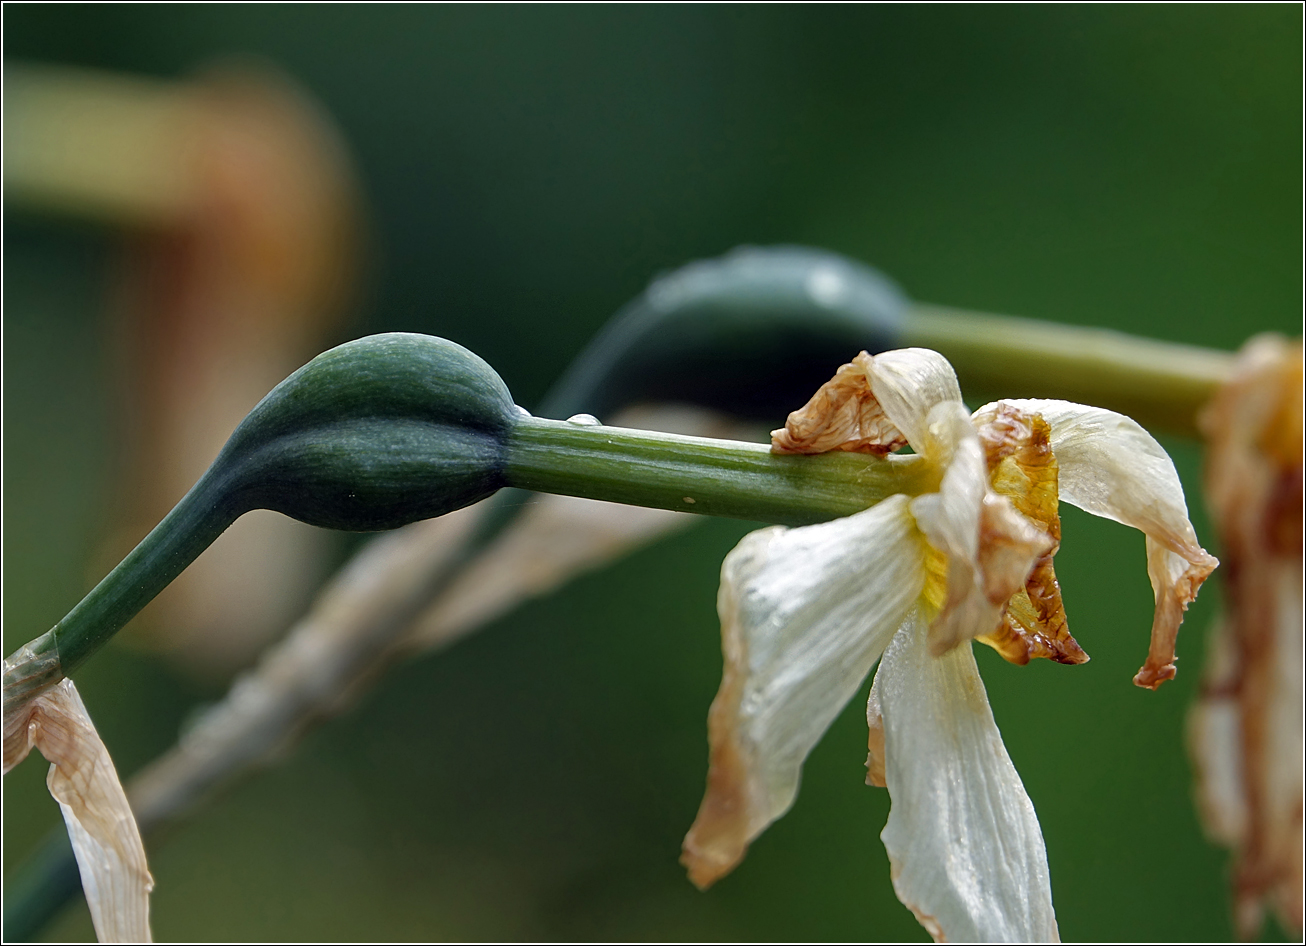 Image of genus Narcissus specimen.